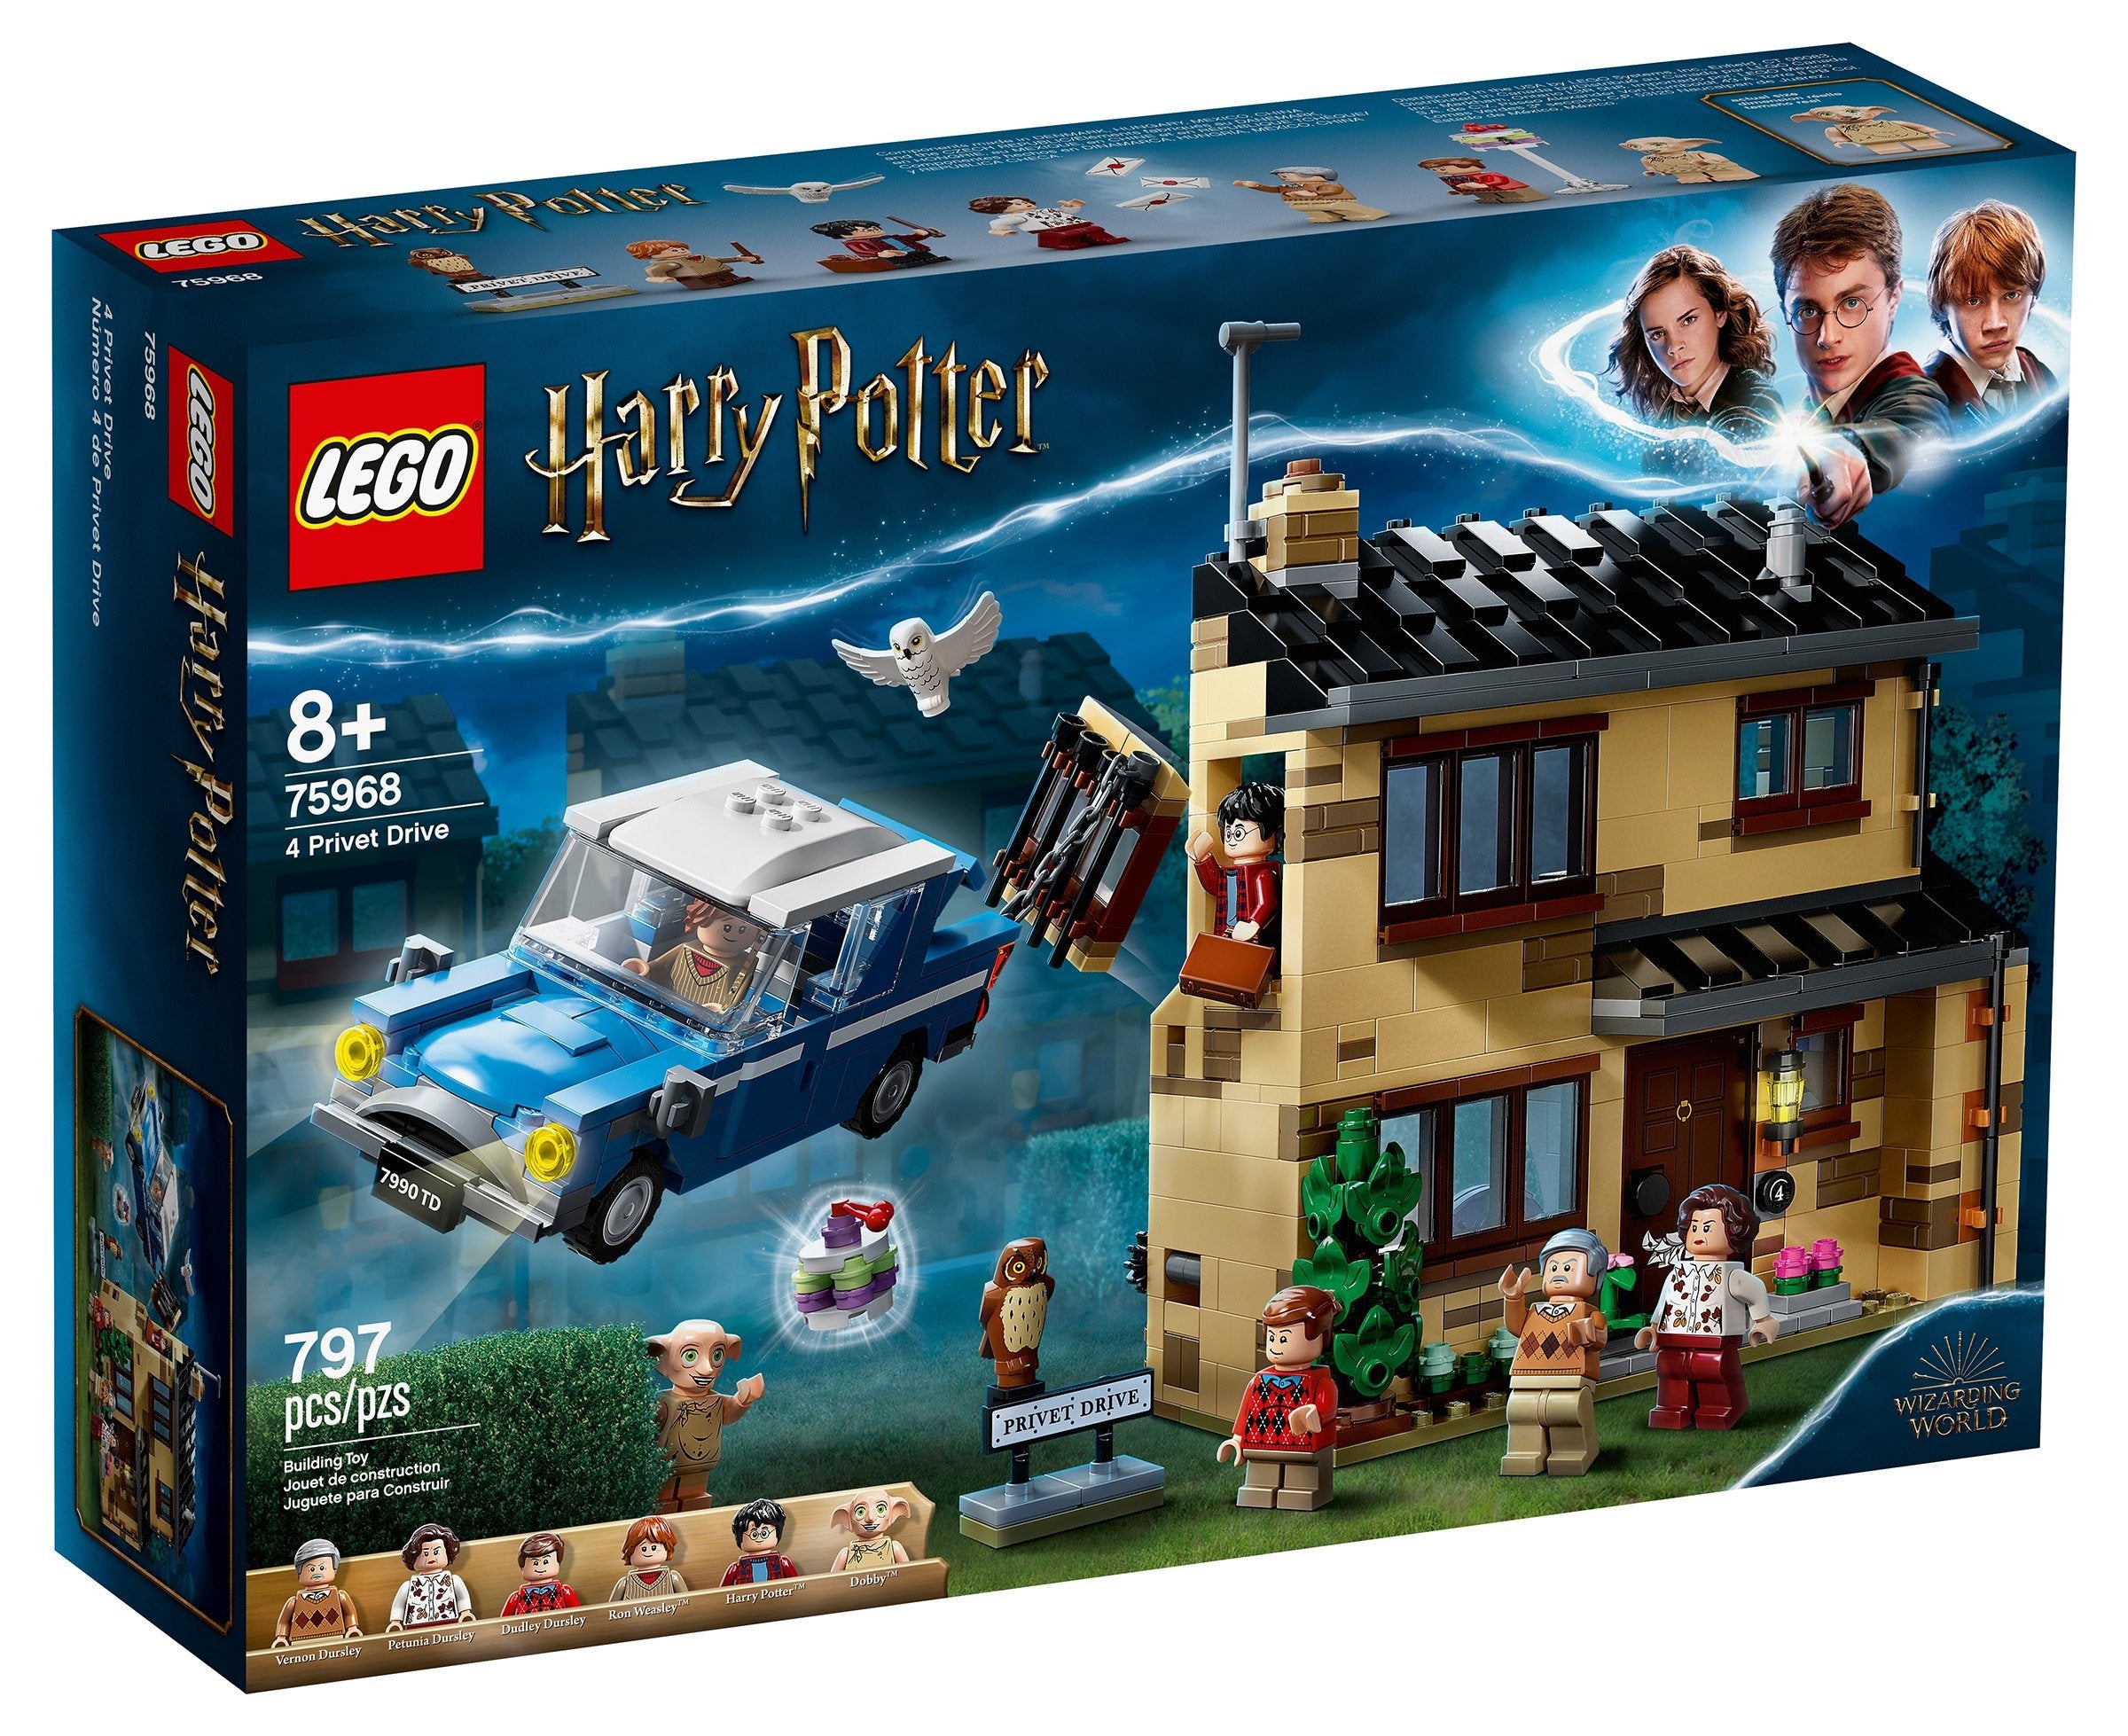 LEGO Harry Potter Ligusterweg 4 (75968) - im GOLDSTIEN.SHOP verfügbar mit Gratisversand ab Schweizer Lager! (5702016616682)